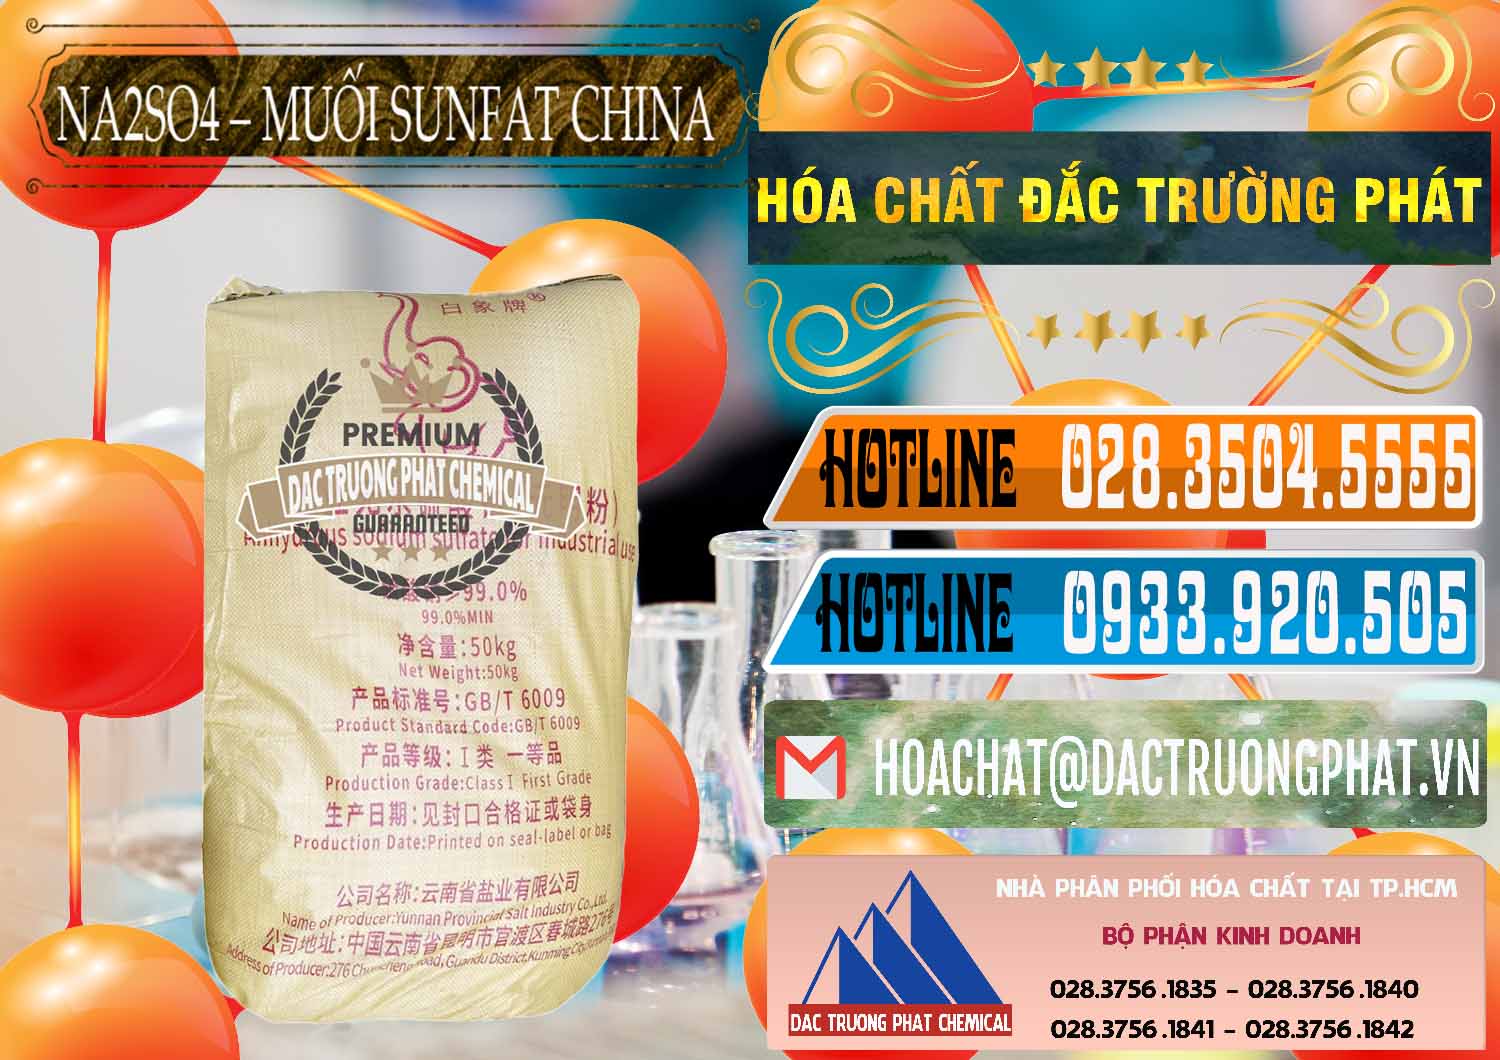 Cty chuyên phân phối & bán Sodium Sulphate - Muối Sunfat Na2SO4 Logo Con Voi Trung Quốc China - 0409 - Nhà cung cấp ( phân phối ) hóa chất tại TP.HCM - stmp.net